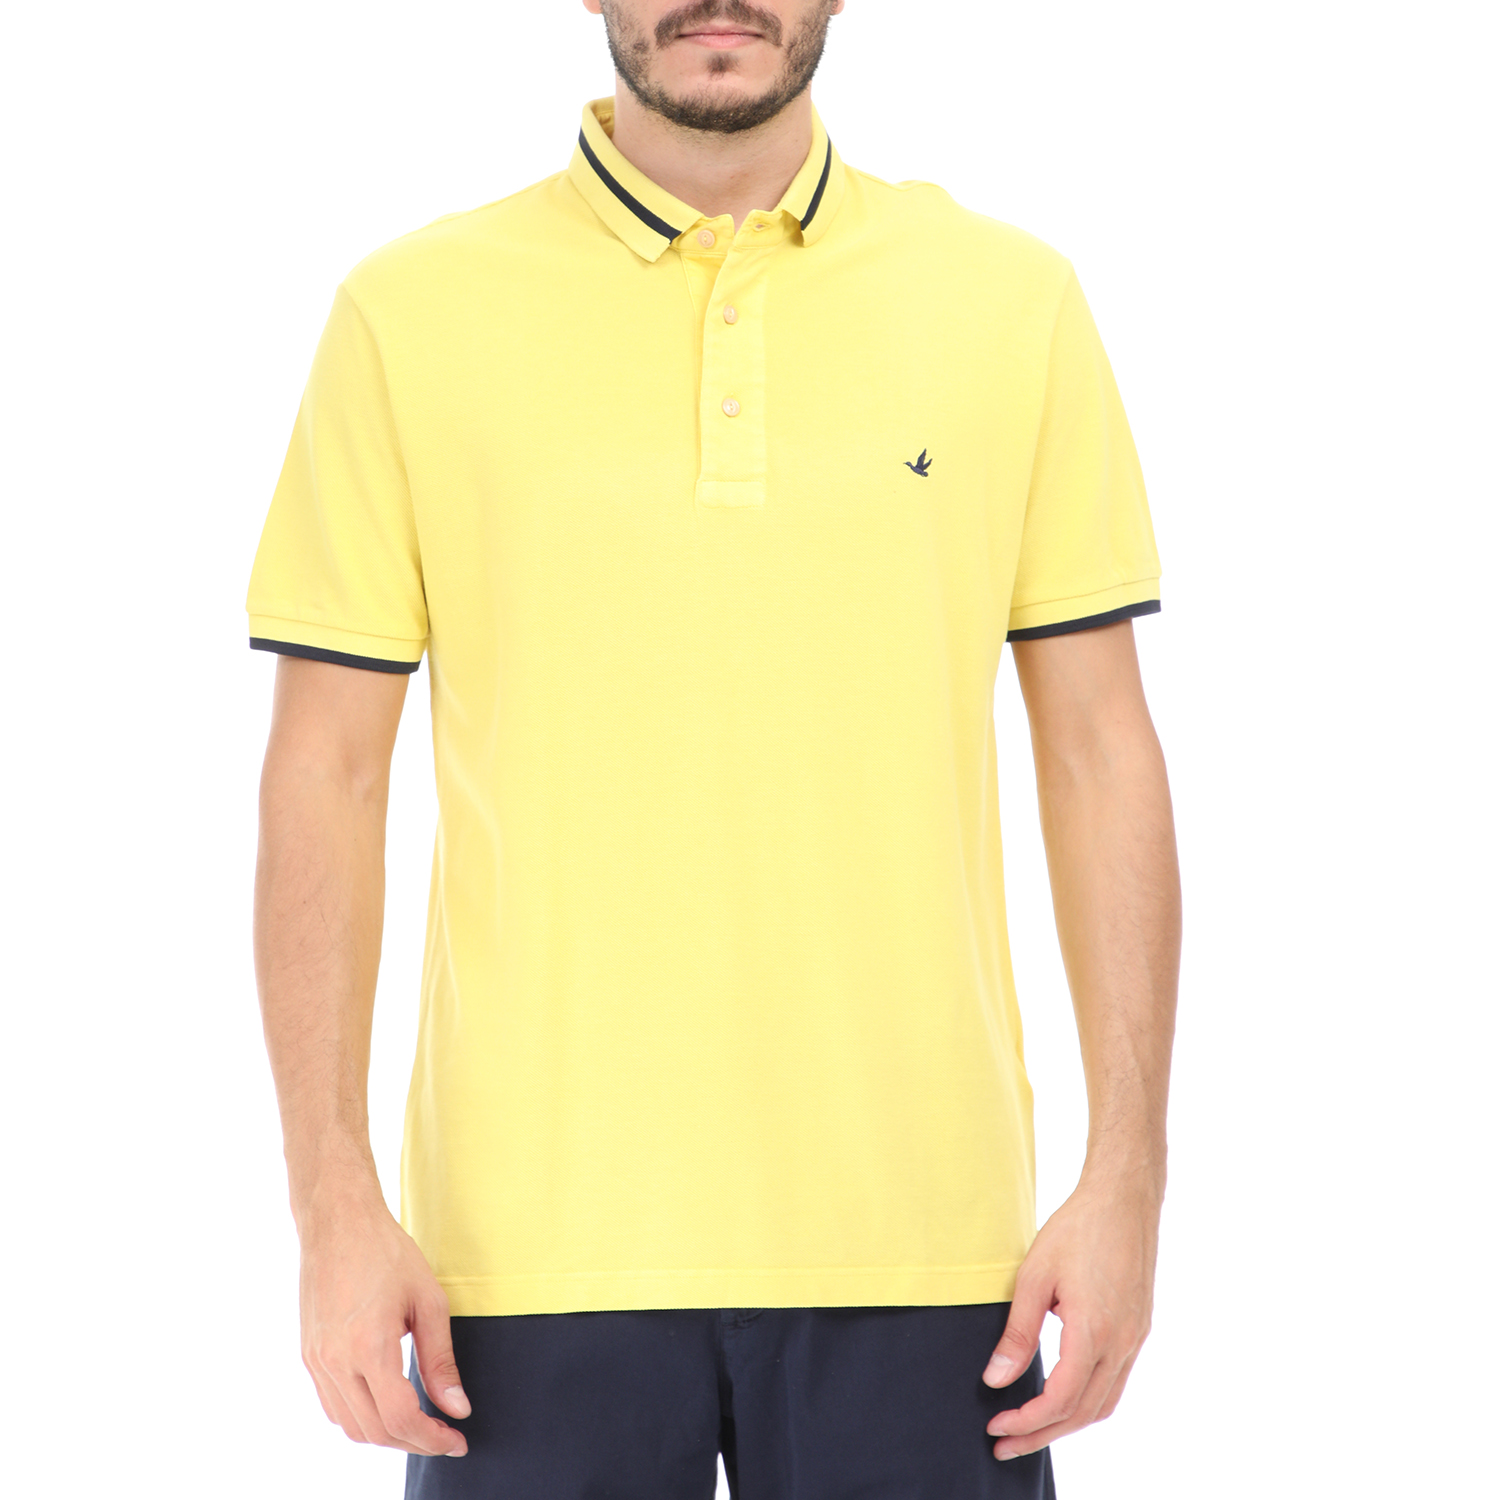 Ανδρικά/Ρούχα/Μπλούζες/Πόλο BROOKSFIELD - Ανδρική polo μπλούζα BROOKSFIELD κίτρινη